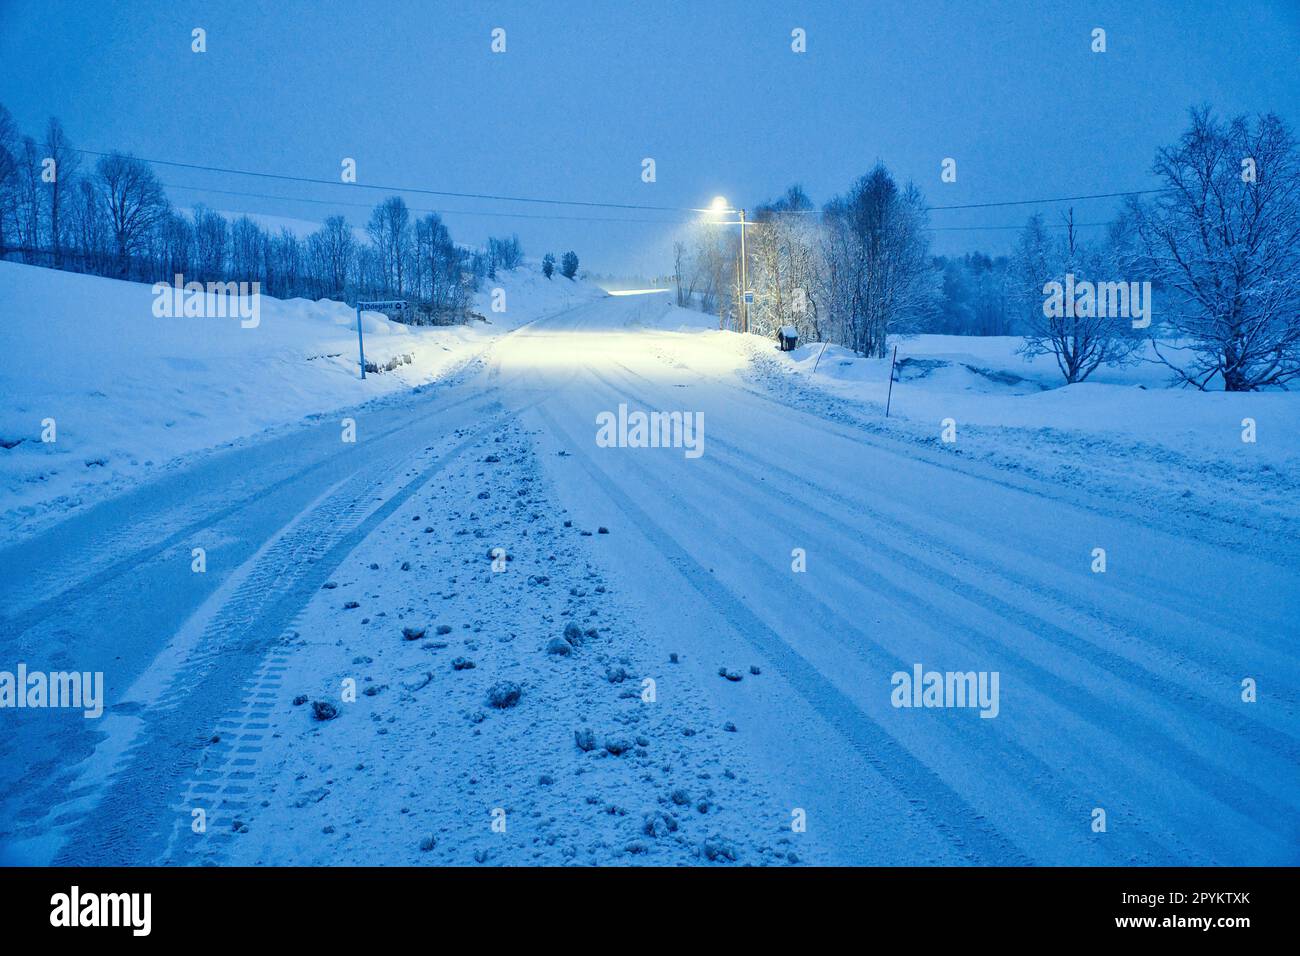 Paesaggio invernale in Scandinavia. Strada innevata con alberi innevati. Sulla strada brilla un lampione. Foto del paesaggio da nord Foto Stock